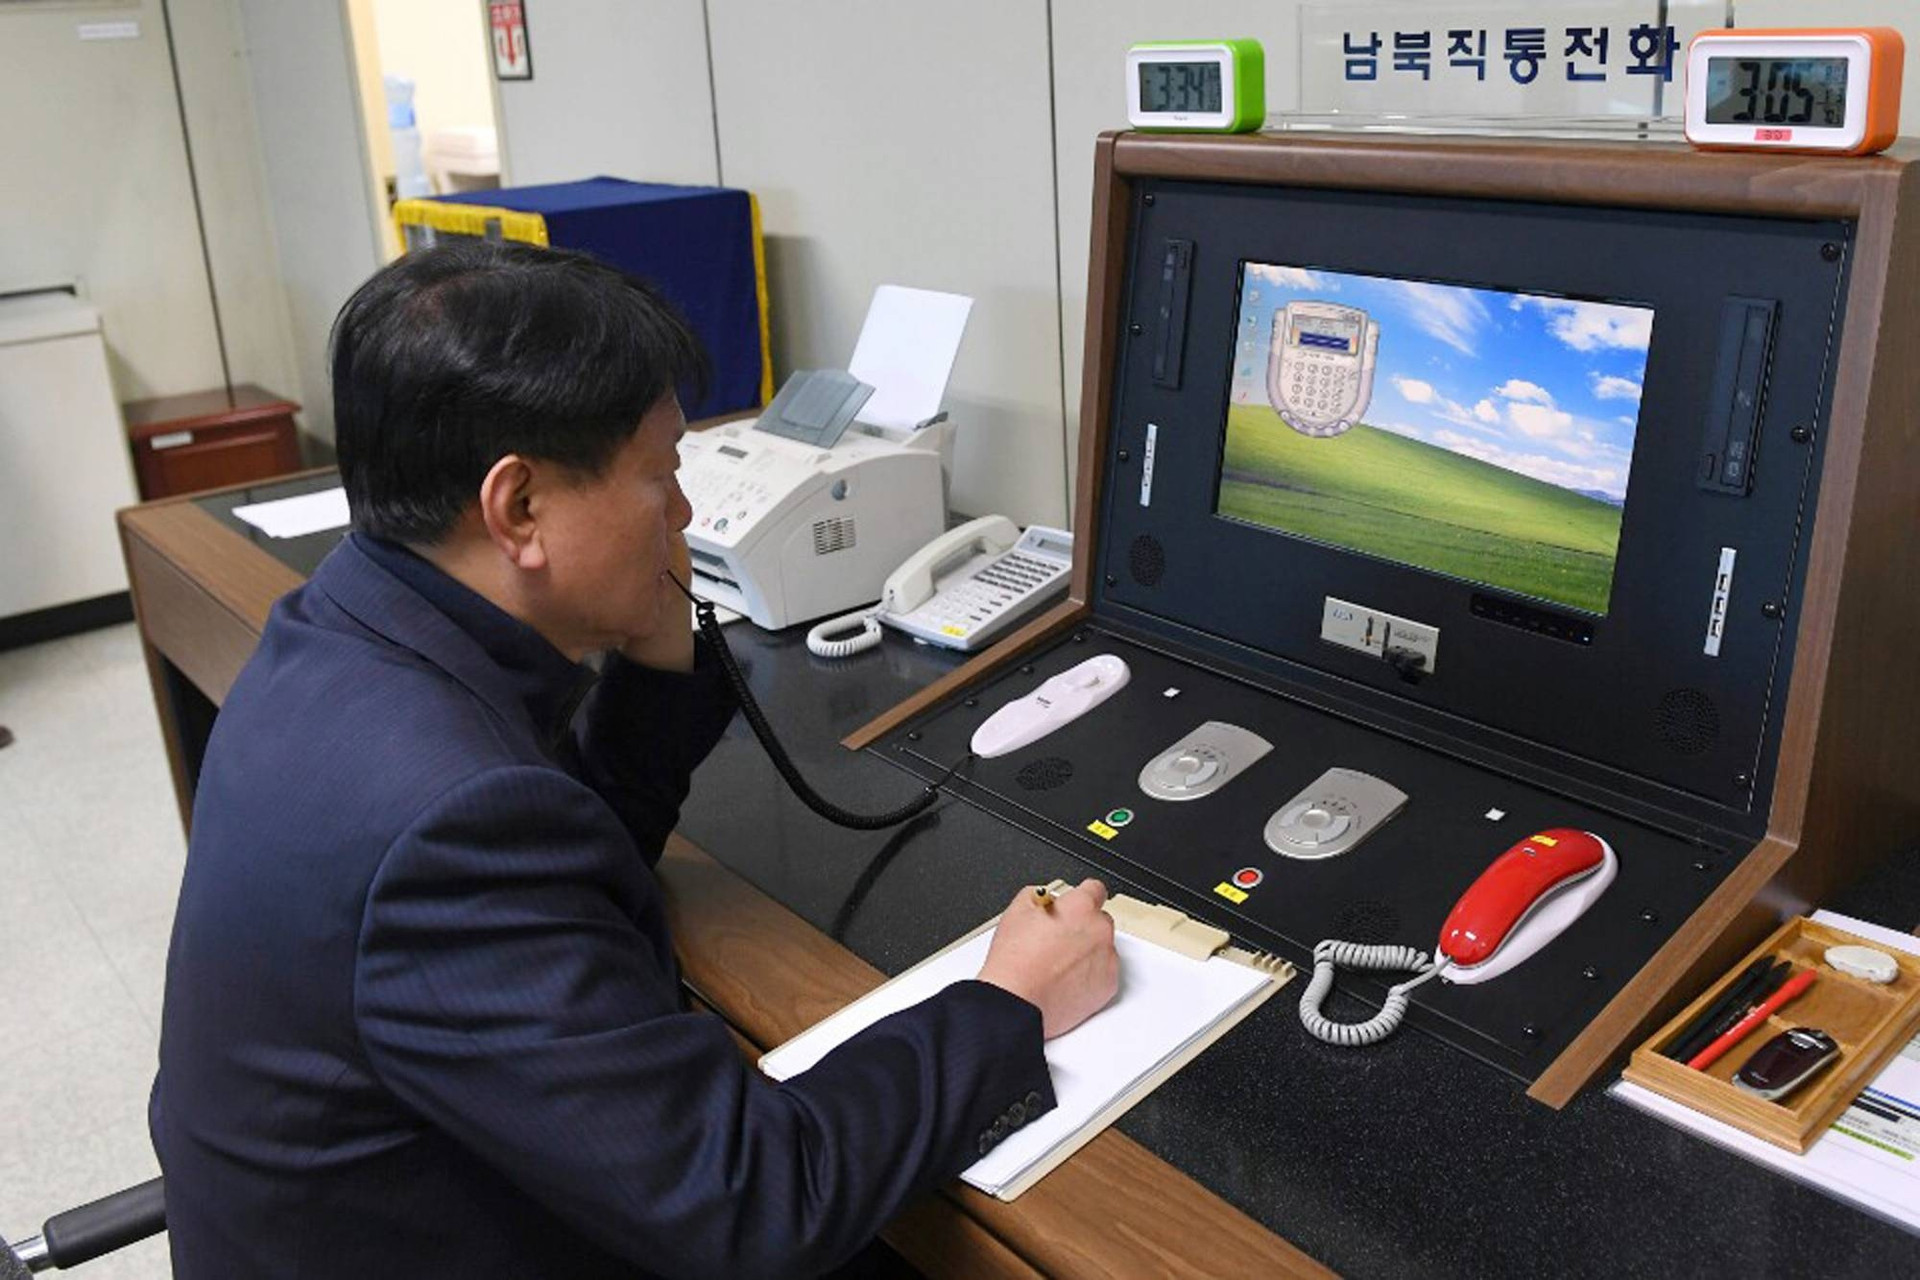 Triều Tiên có động thái tích cực, nối lại đường dây nóng với Hàn Quốc sau 13 tháng đơn phương cắt đứt. (Nguồn: AP)